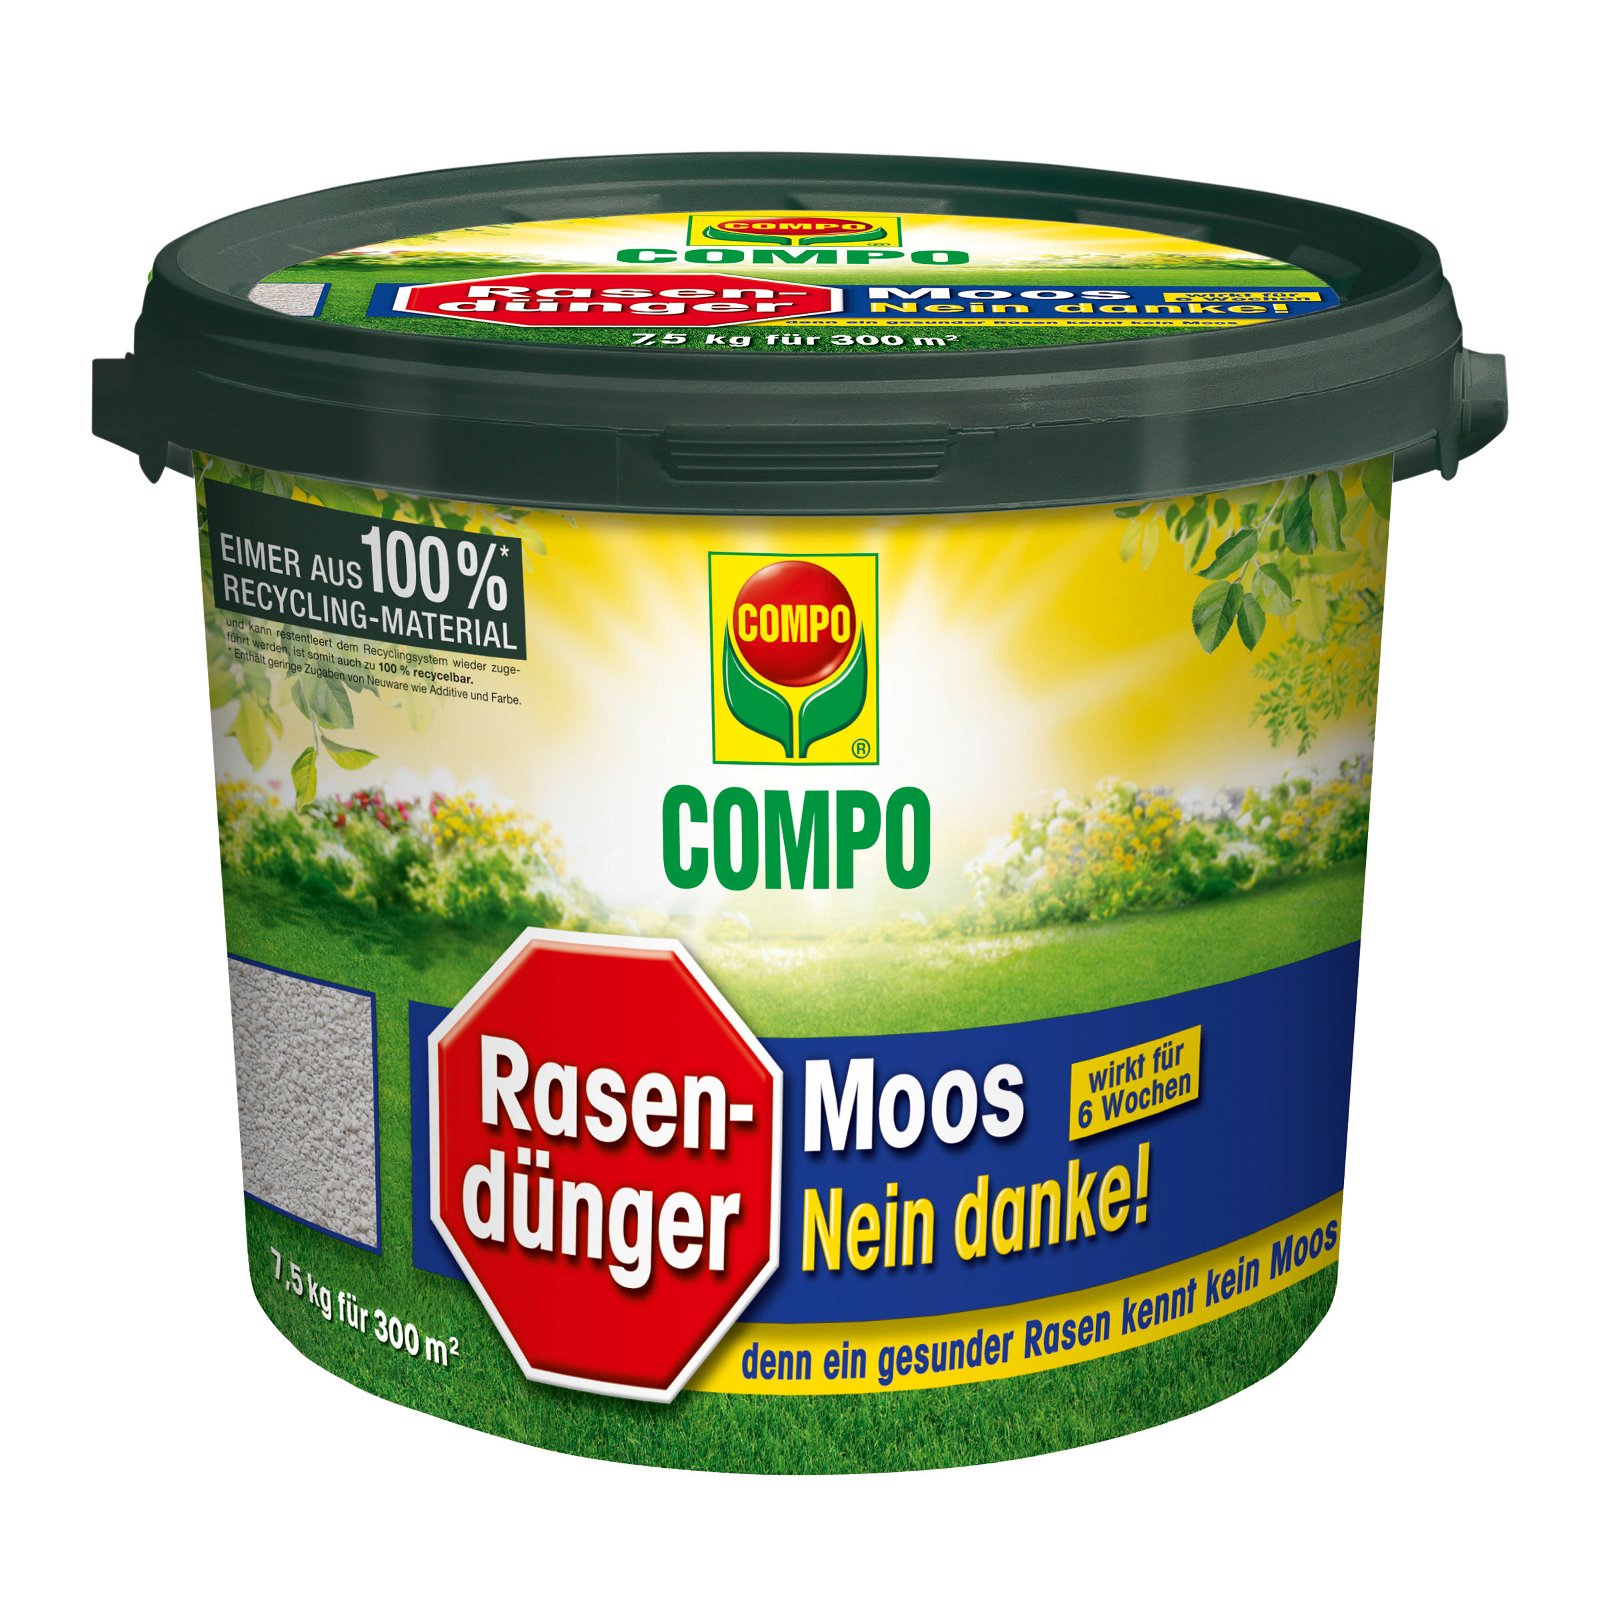 Compo Rasendünger Moos – Nein danke!, 7,5 kg